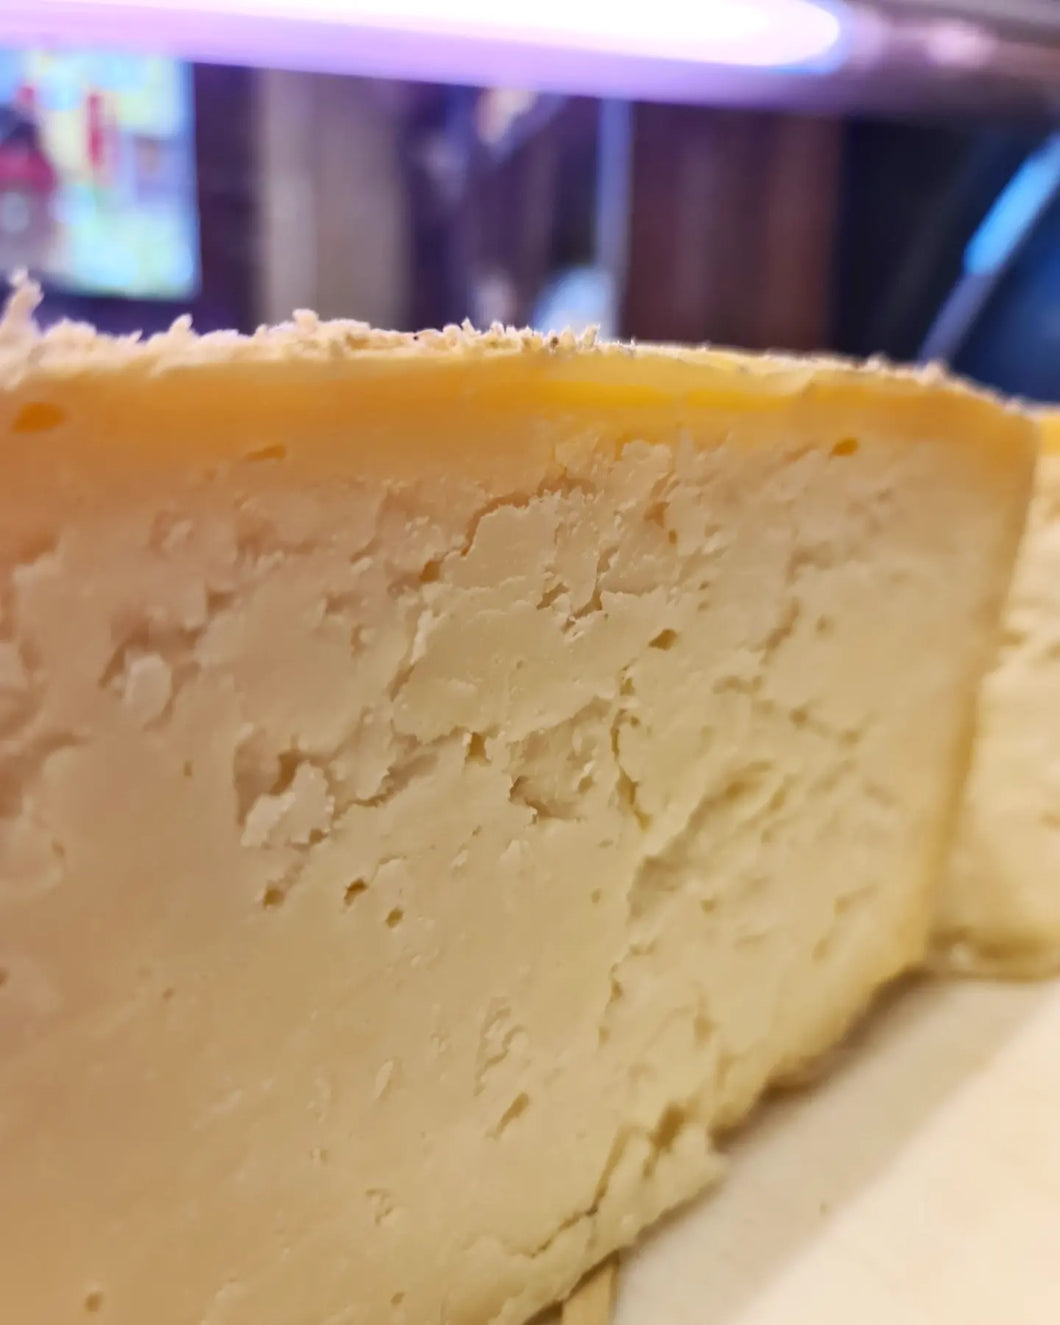 Pecorino riserva premio world cheese